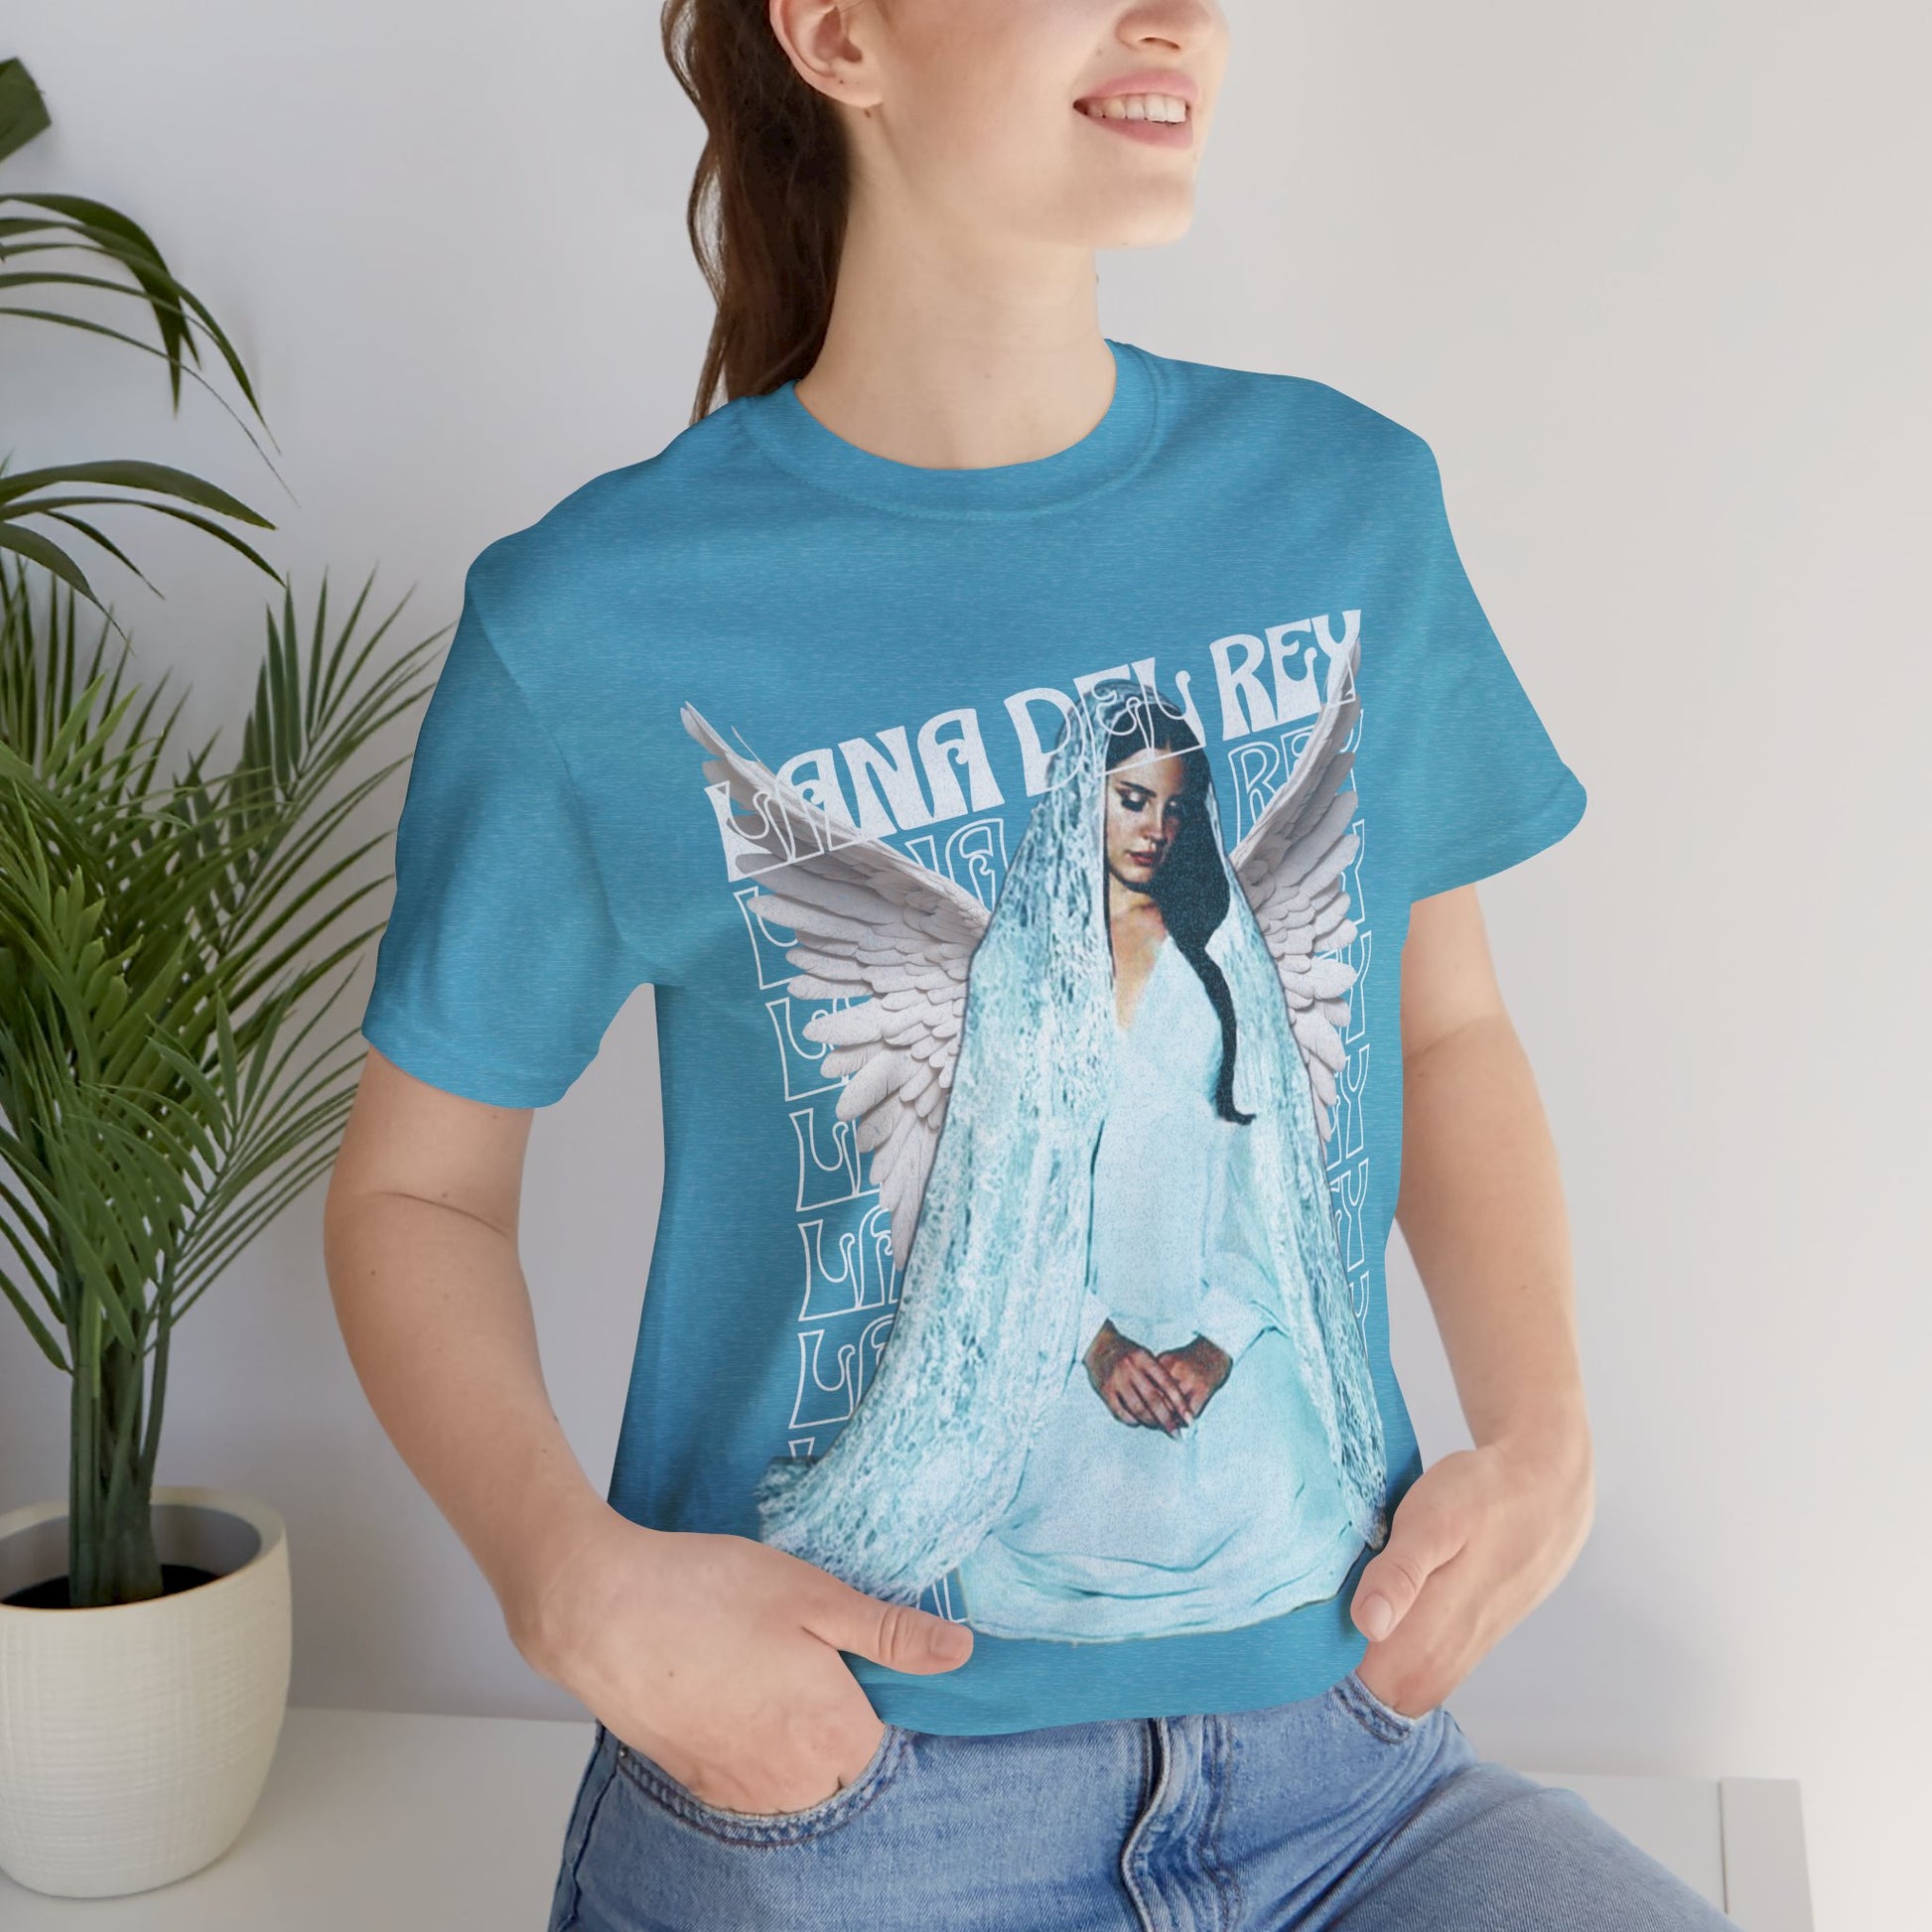 Lana Del Rey T-Shirt Heather Aqua